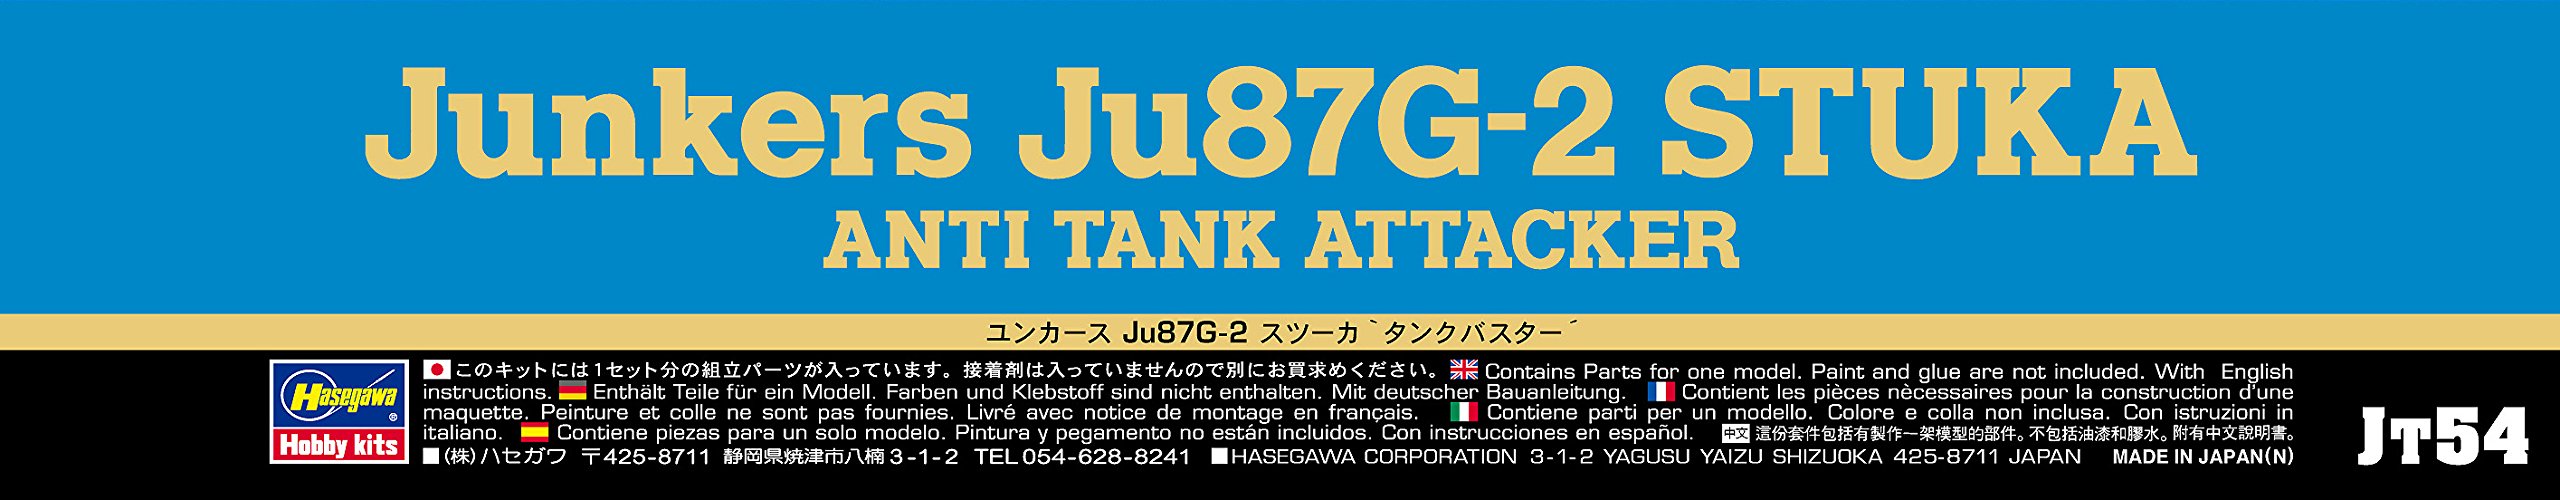 HASEGAWA 1/48 Junkers Ju87G-2 Stuka Anti Tank Attacker Plastique Modèle